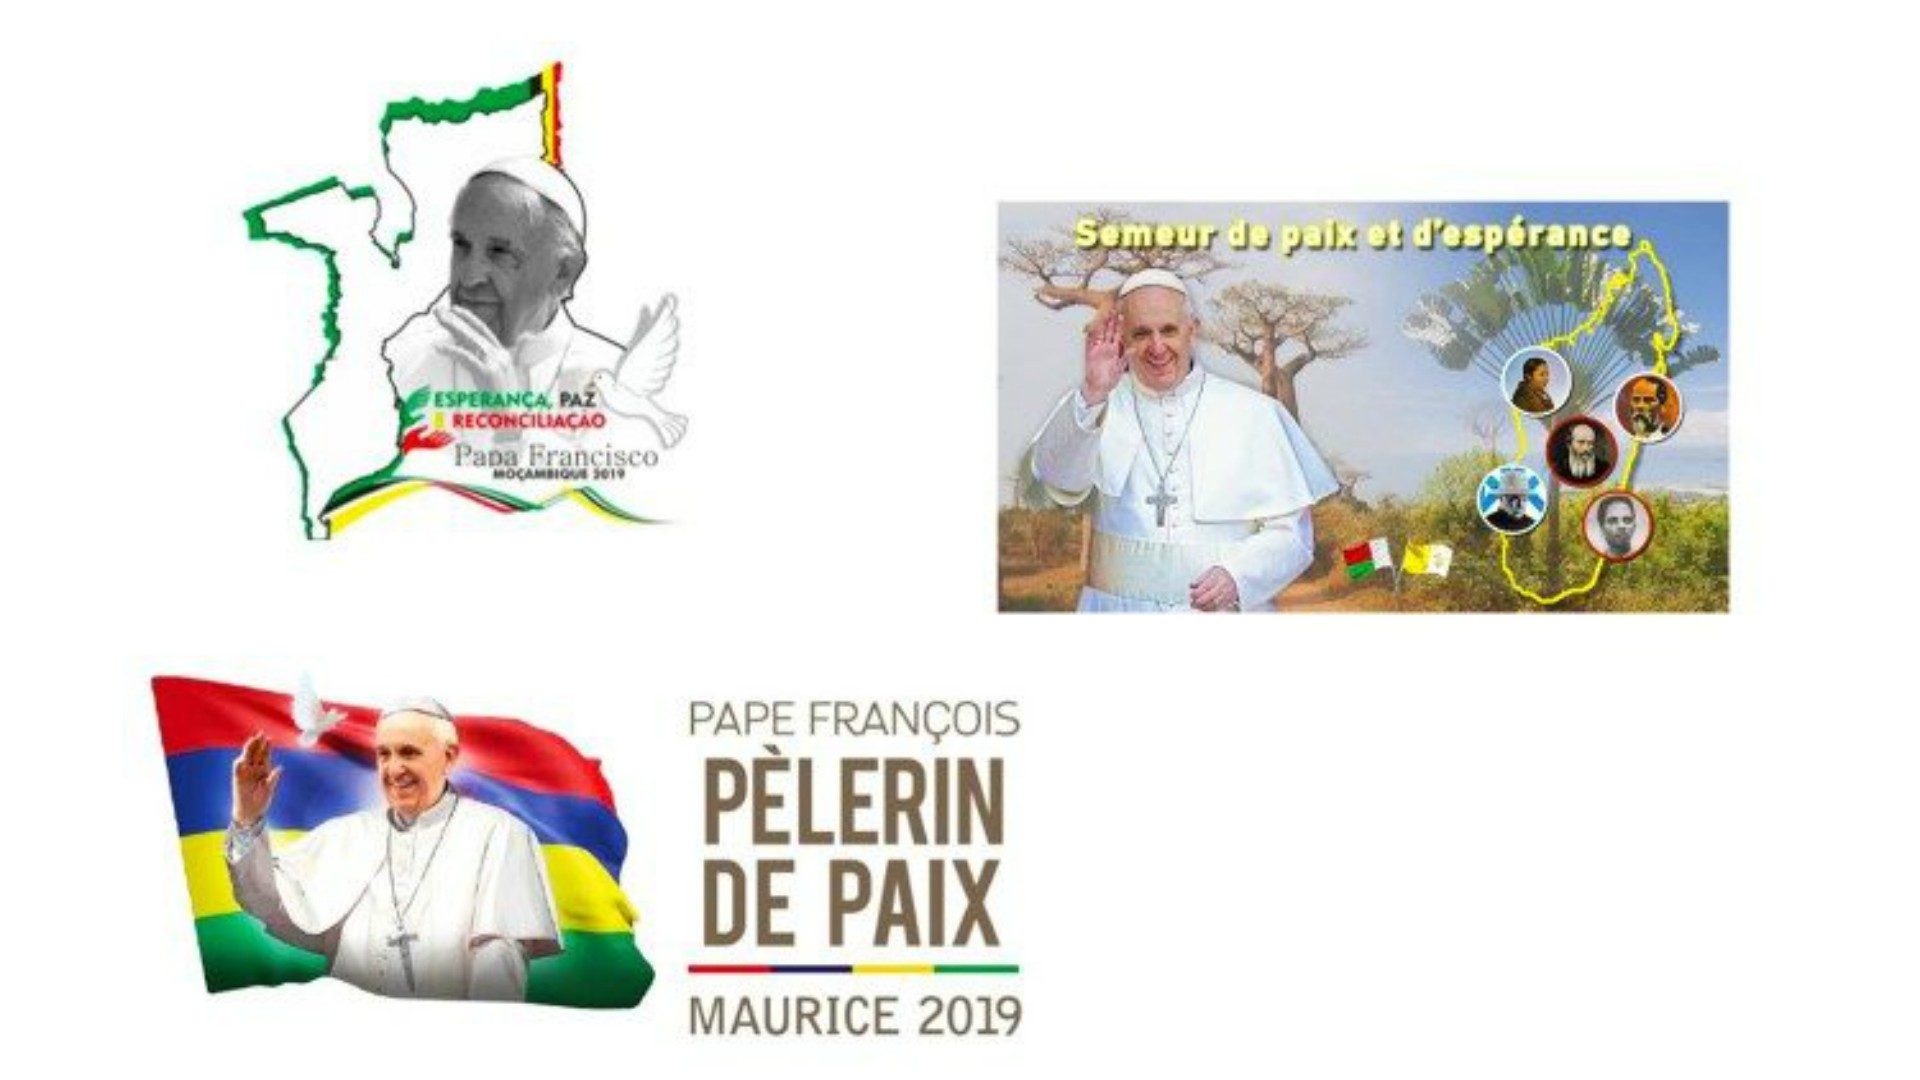 Káº¿t quáº£ hÃ¬nh áº£nh cho visite du pape franÃ§ois Ã  madagascar